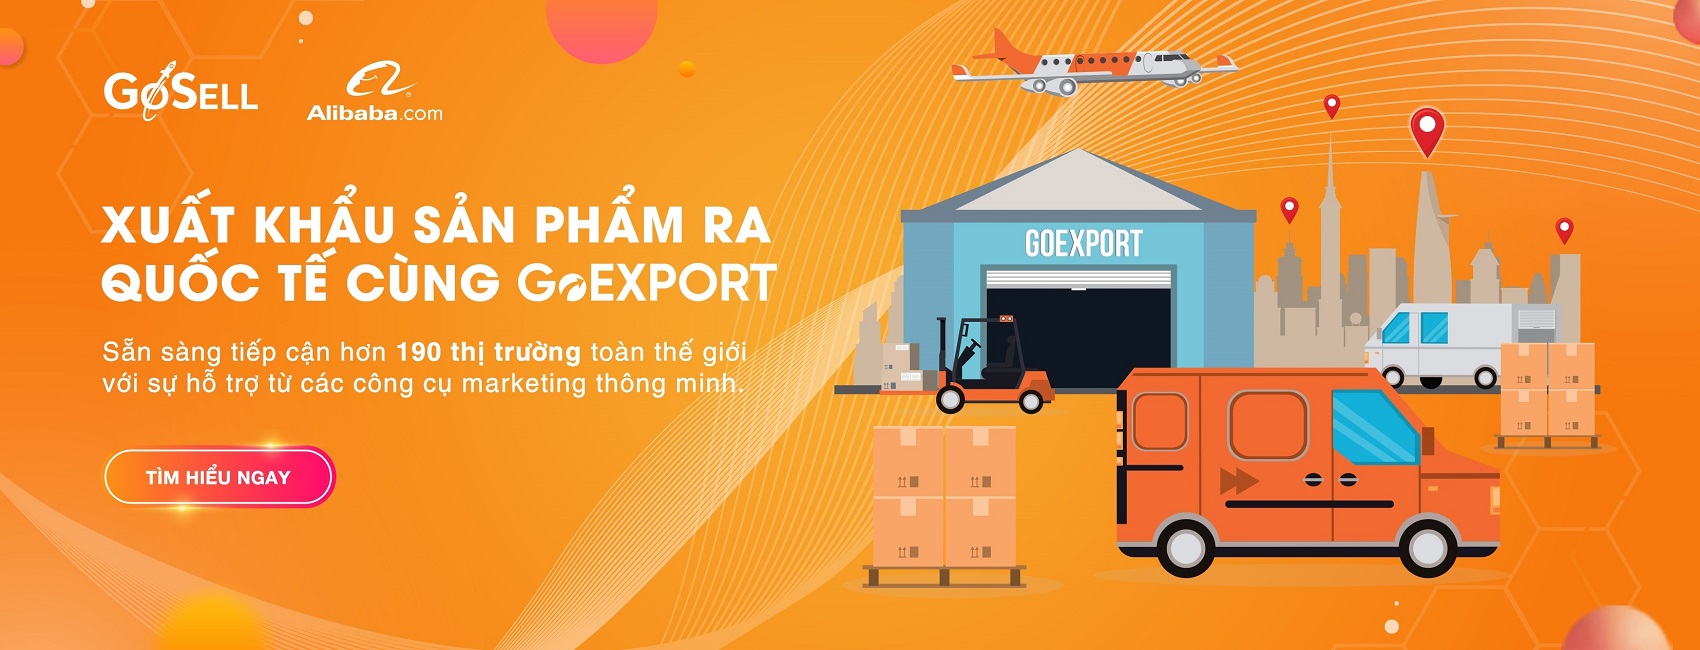 GoEXPORT hỗ trợ toàn diện cho doanh nghiệp muốn sử dụng nền tảng của Alibaba.com